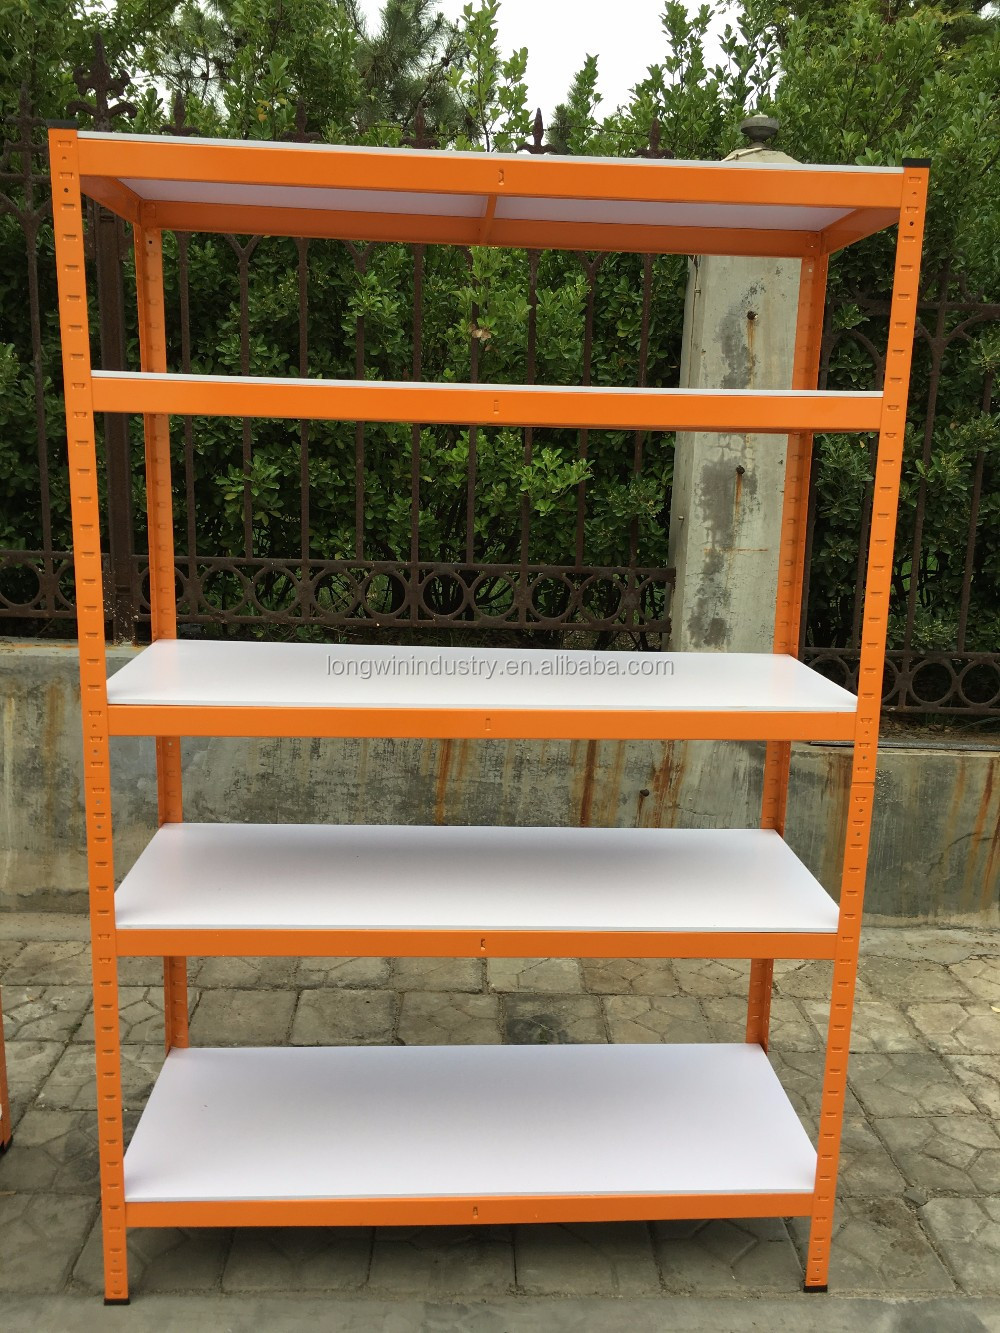 waterproof board orange metal frame garage storage rack